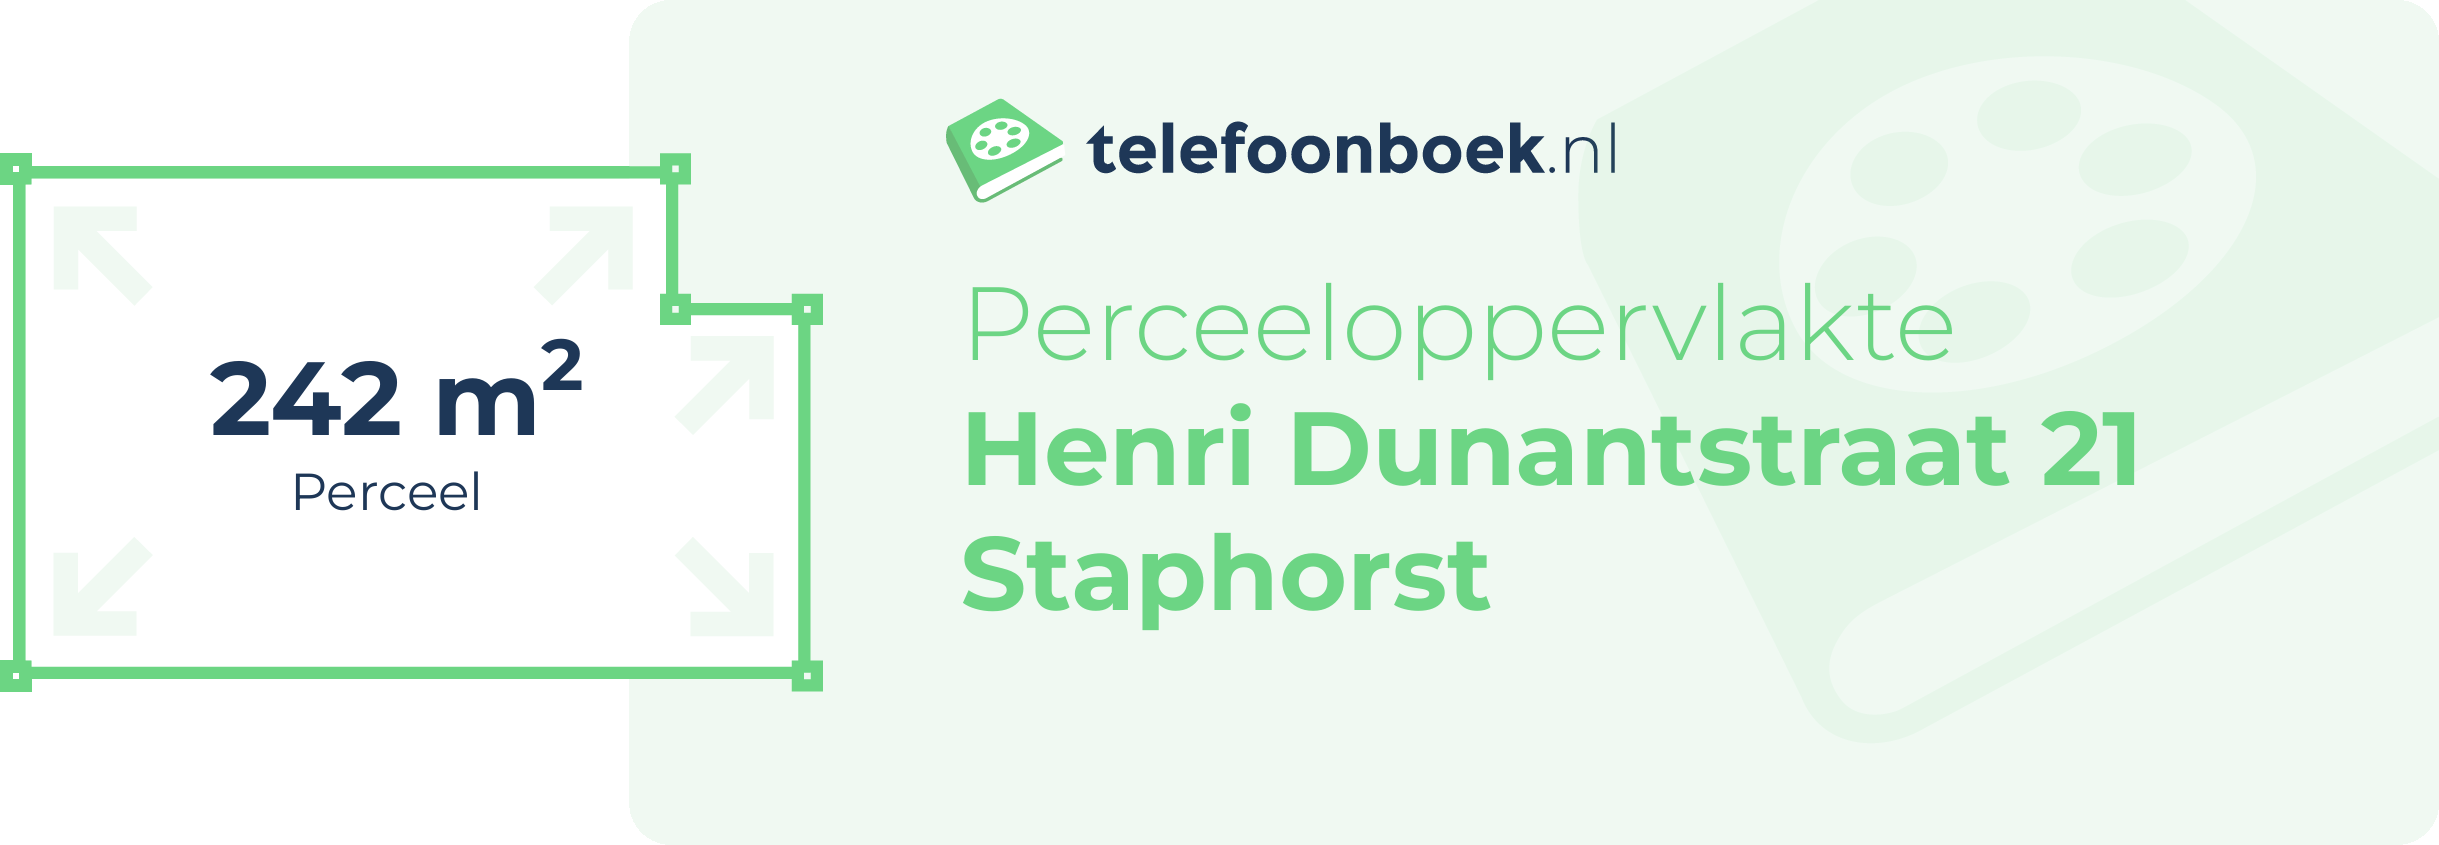 Perceeloppervlakte Henri Dunantstraat 21 Staphorst